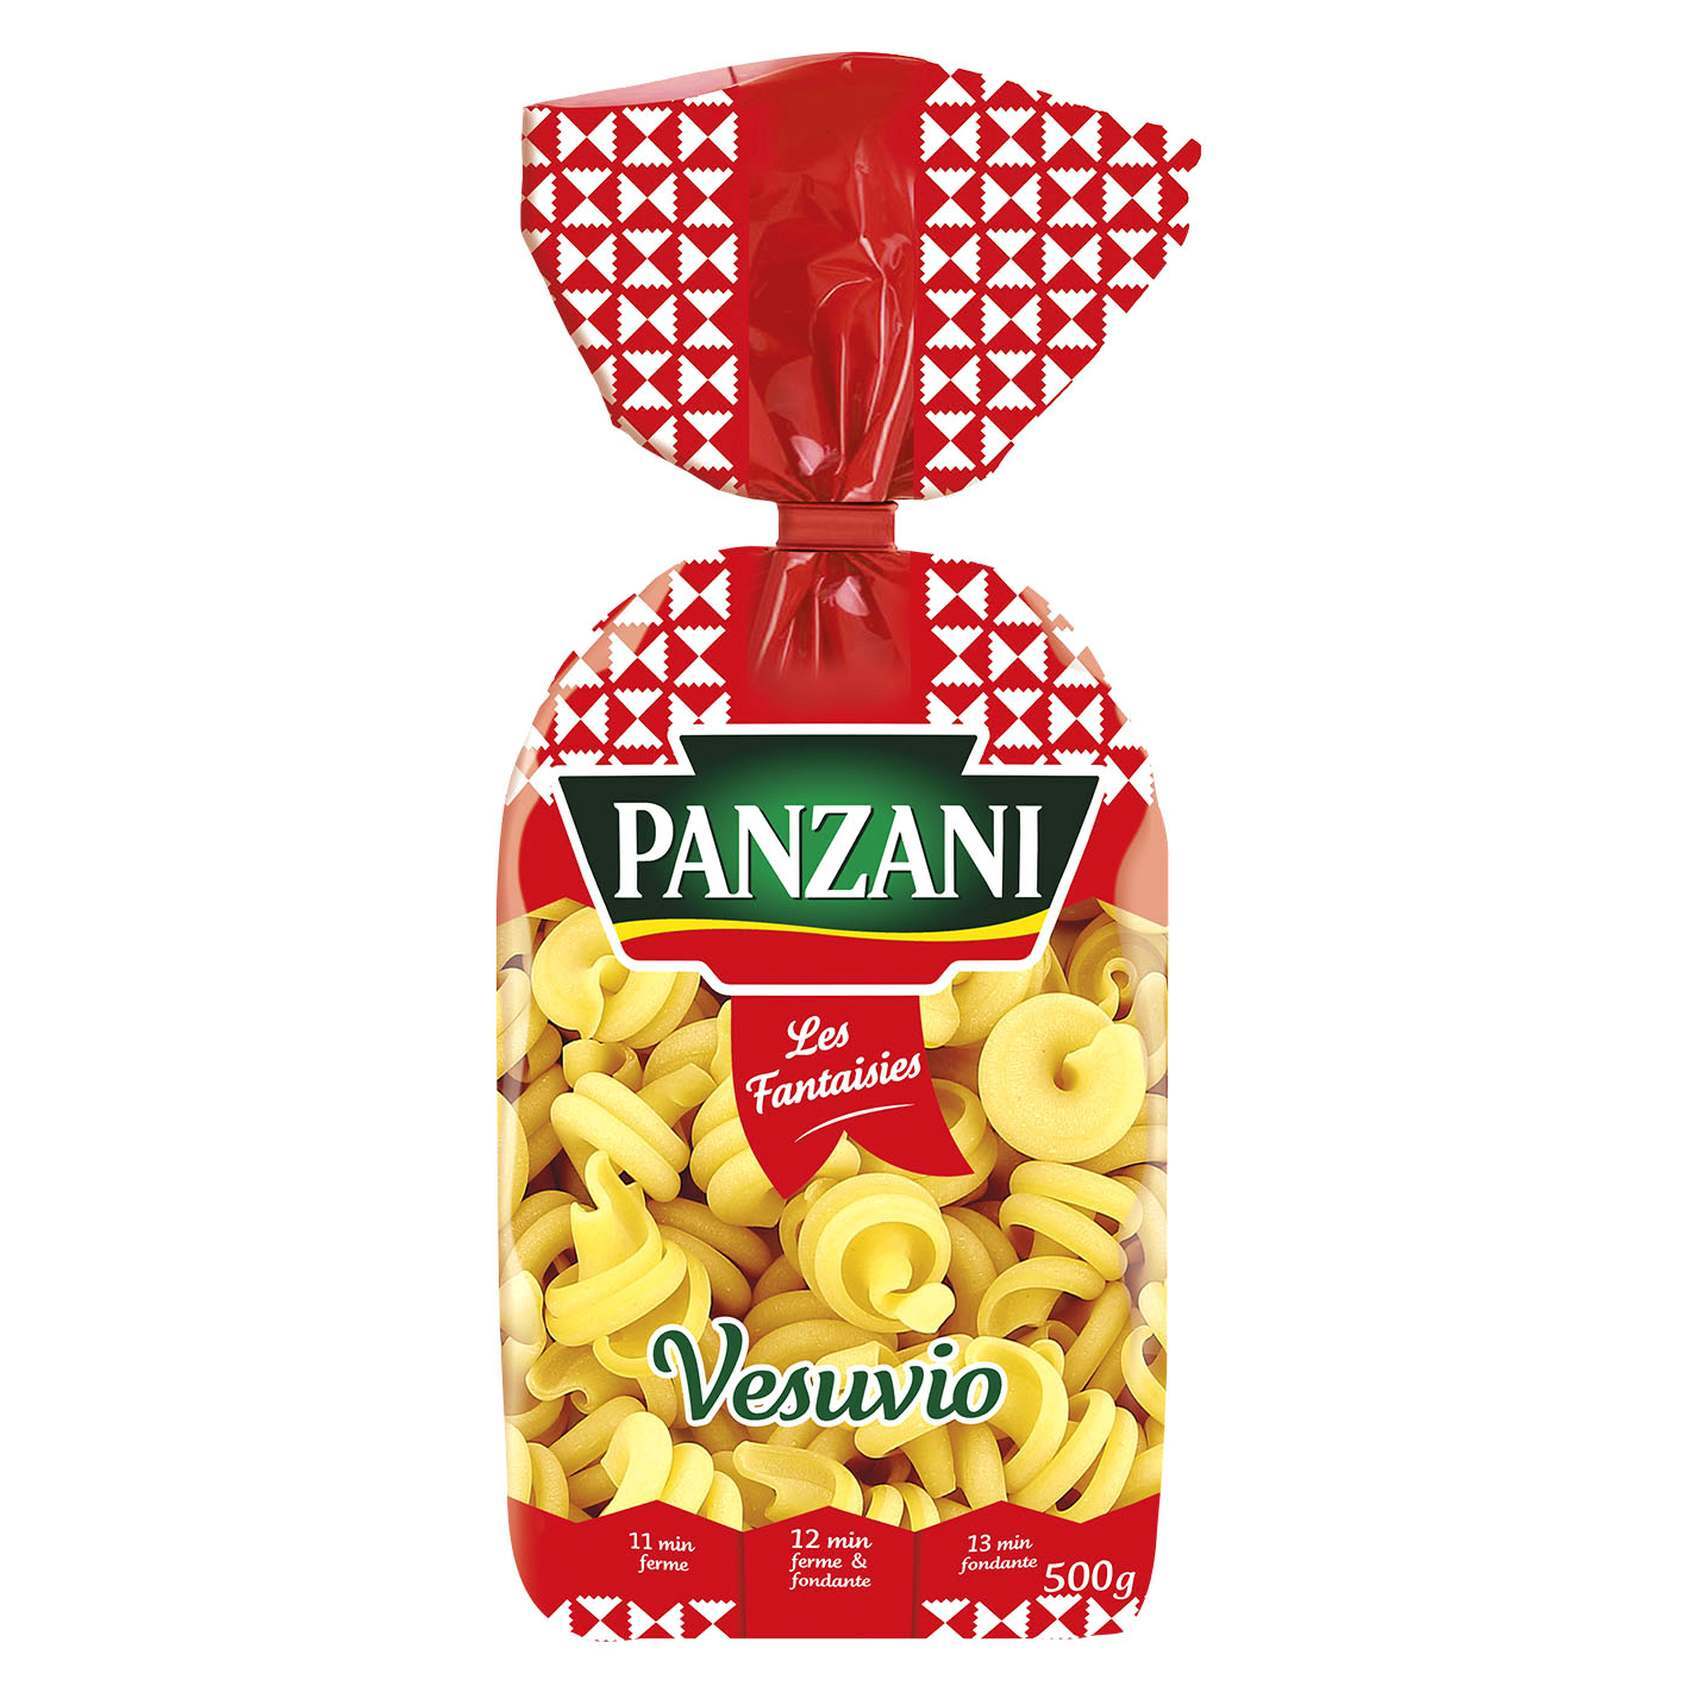 Buy Panzani Vesuvio Pasta 500g Online - Shop Food Cupboard on Carrefour UAE